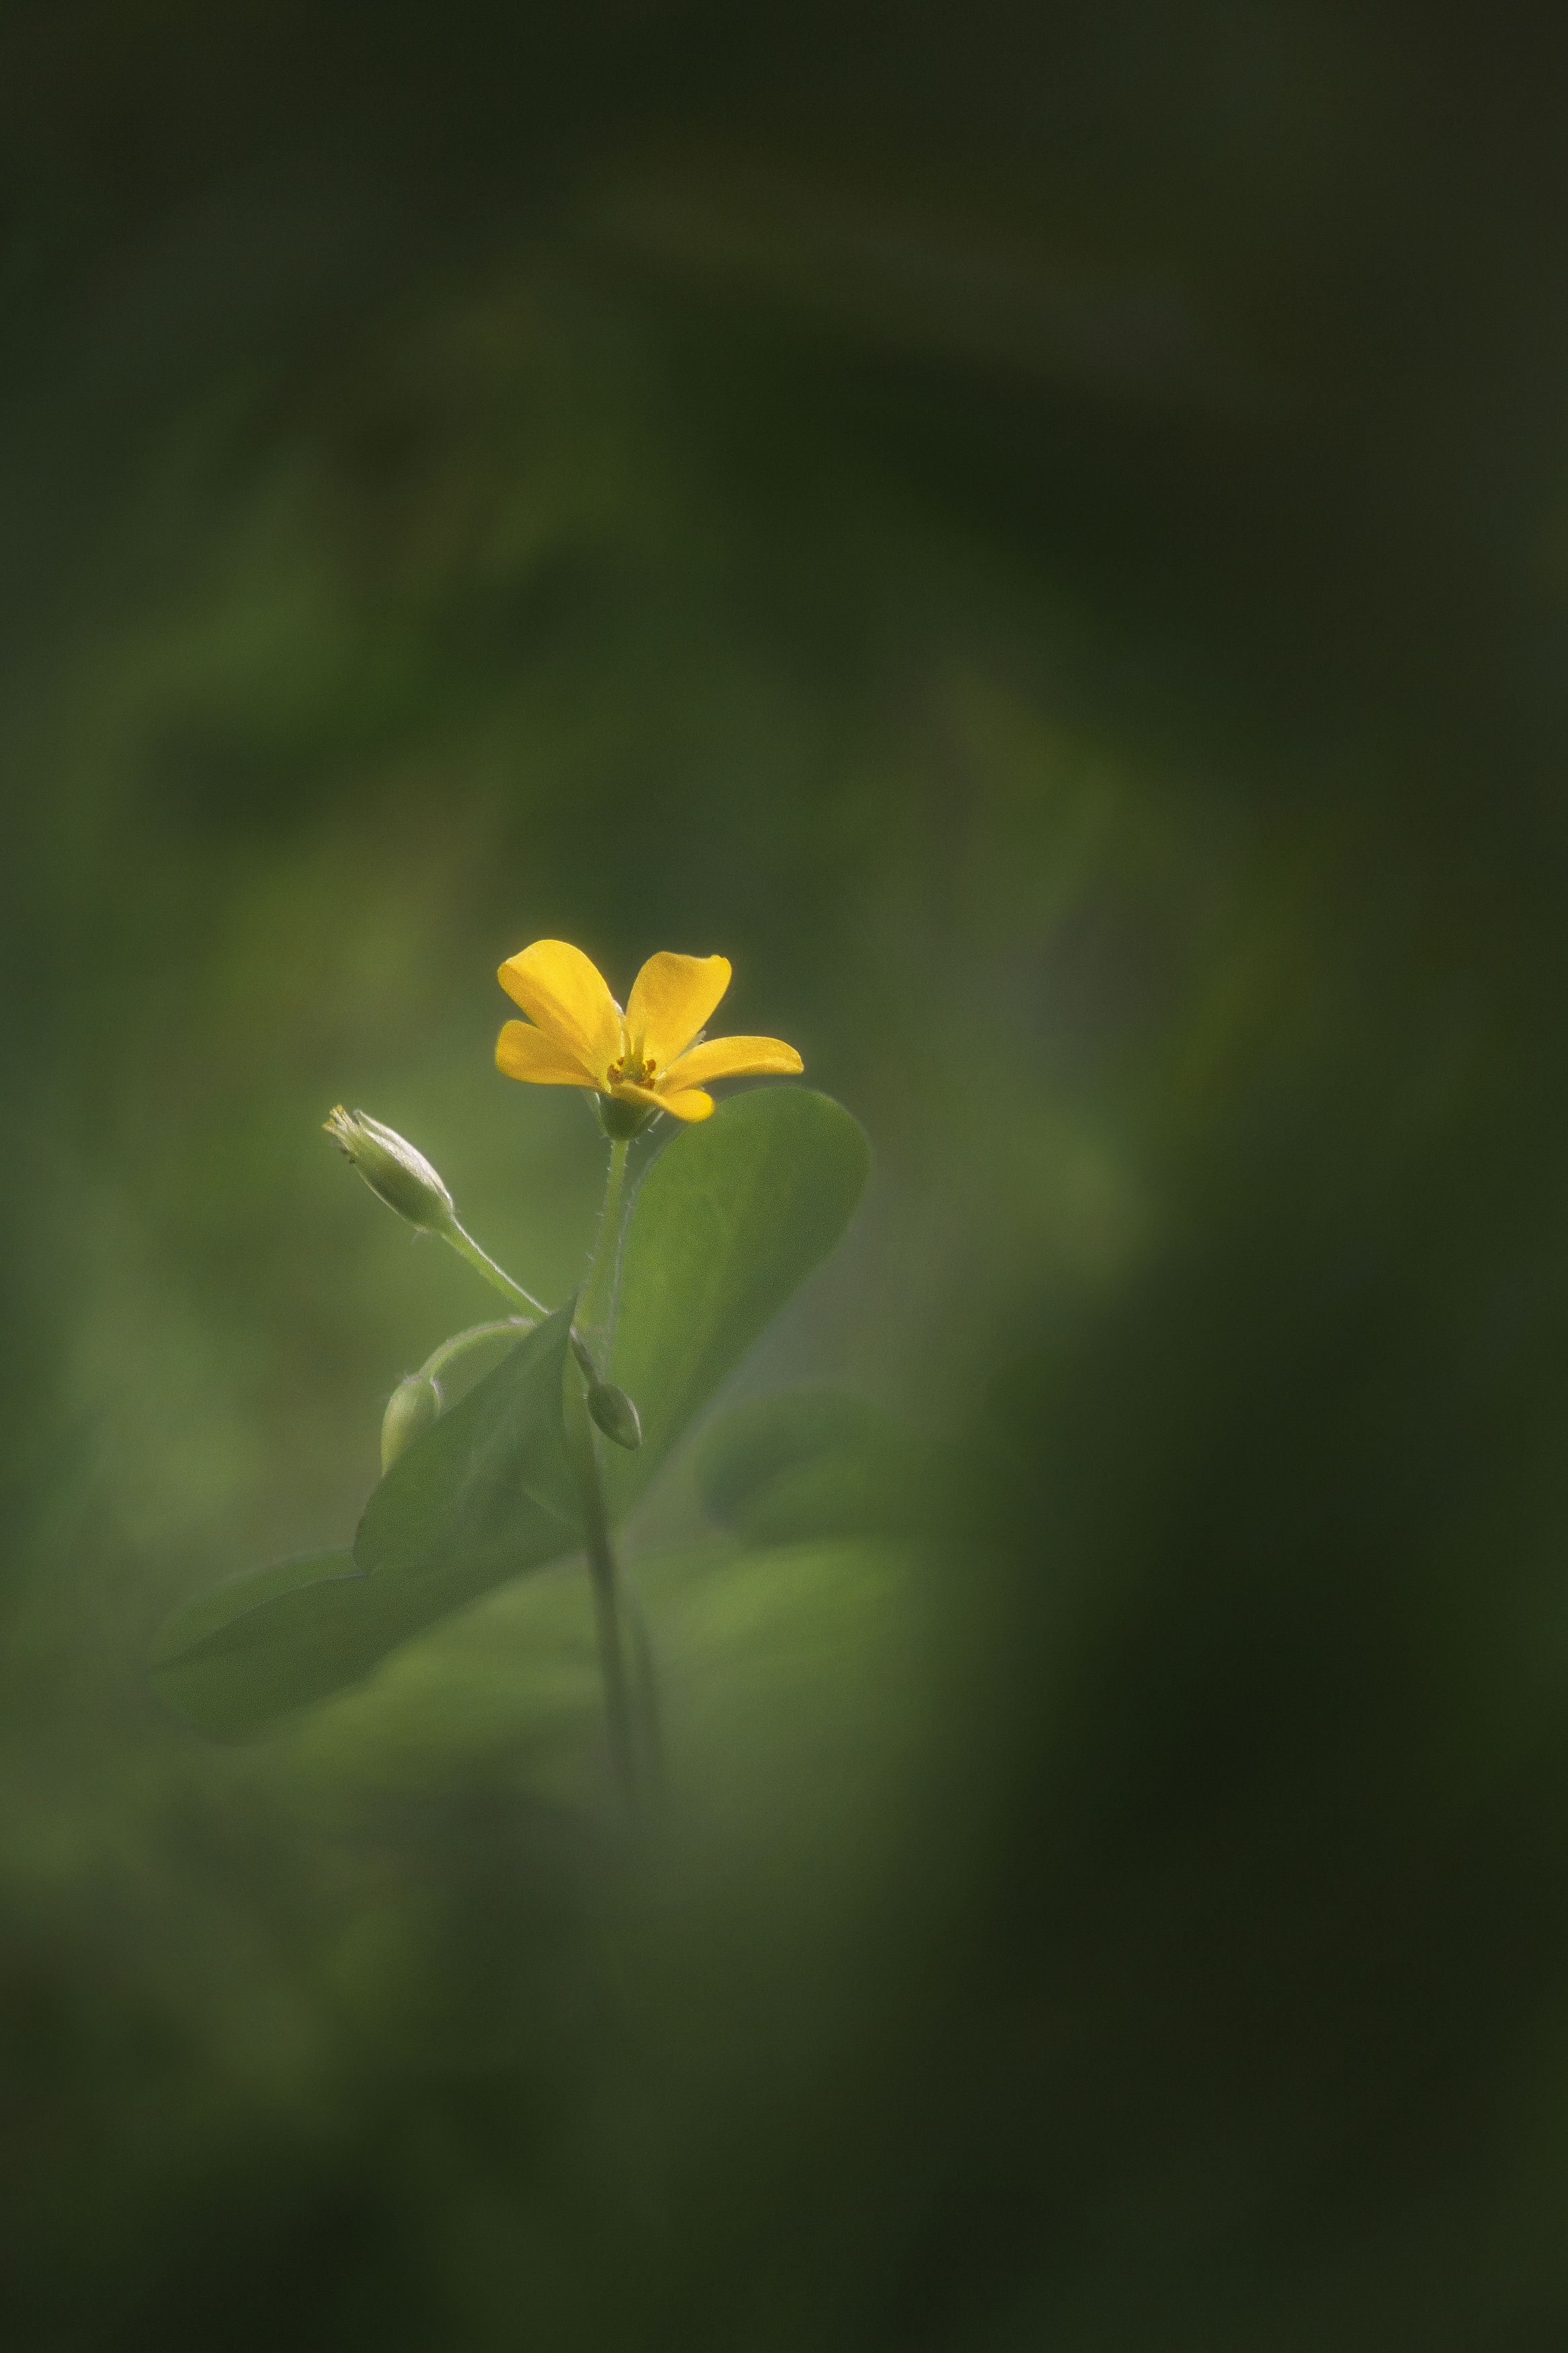 цветок жёлтый цвет лето зелень трава фотография фон боке природа флора, Еремеев Дмитрий